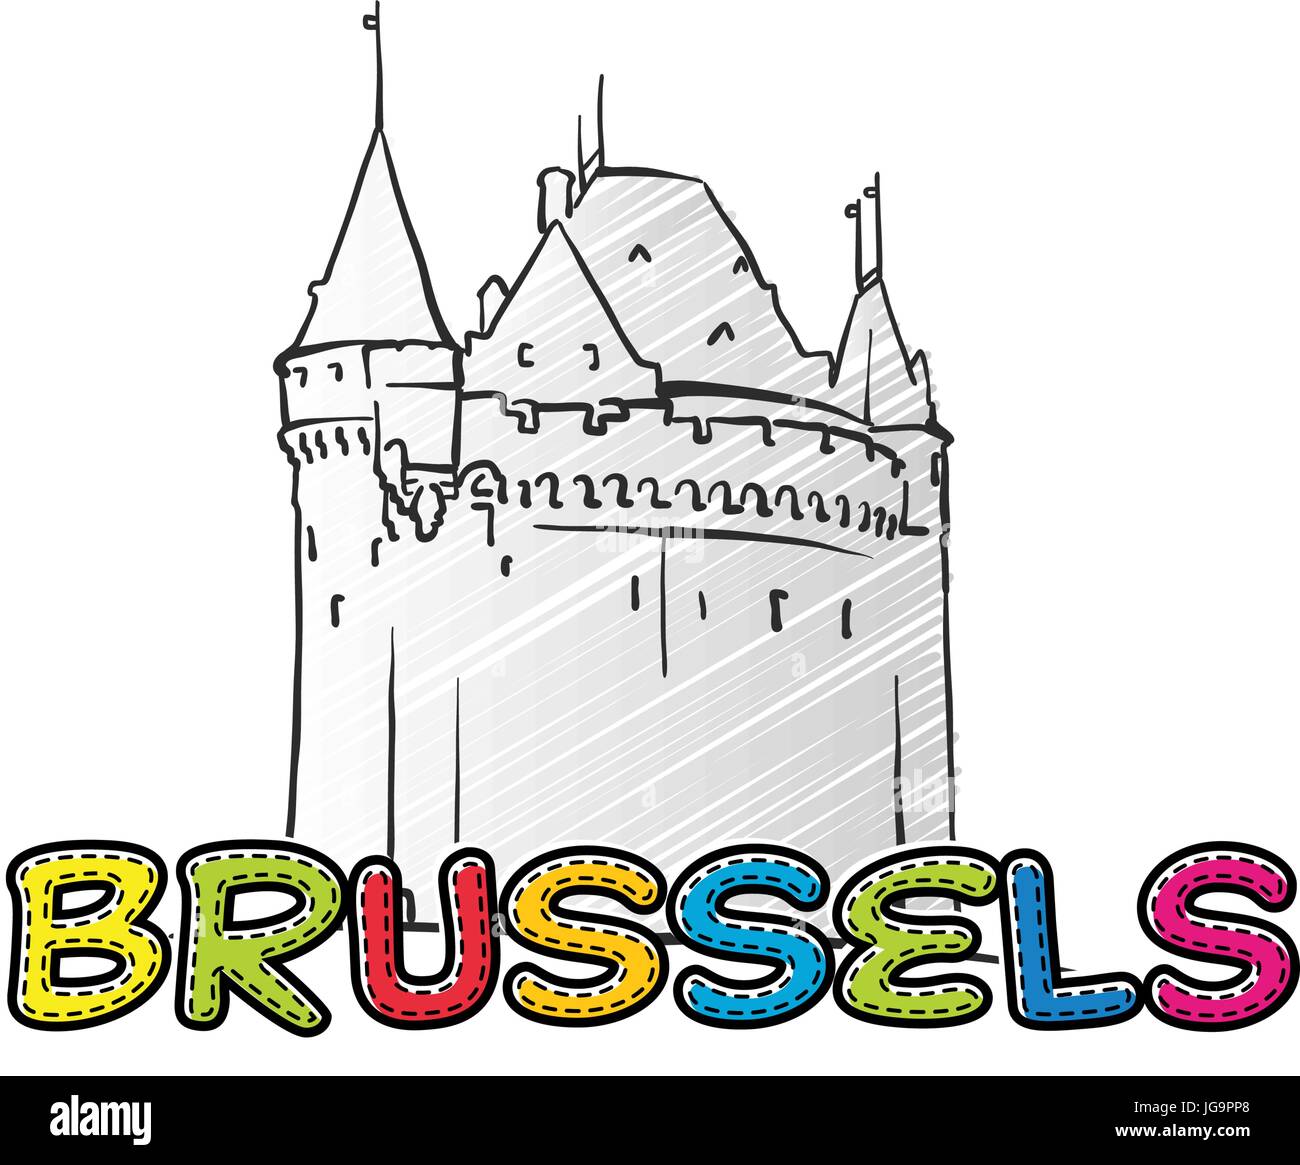 Bruxelles bellissima icona abbozzata, famaous disegnati a mano landmark, il nome della città di scritte, illustrazione vettoriale Illustrazione Vettoriale